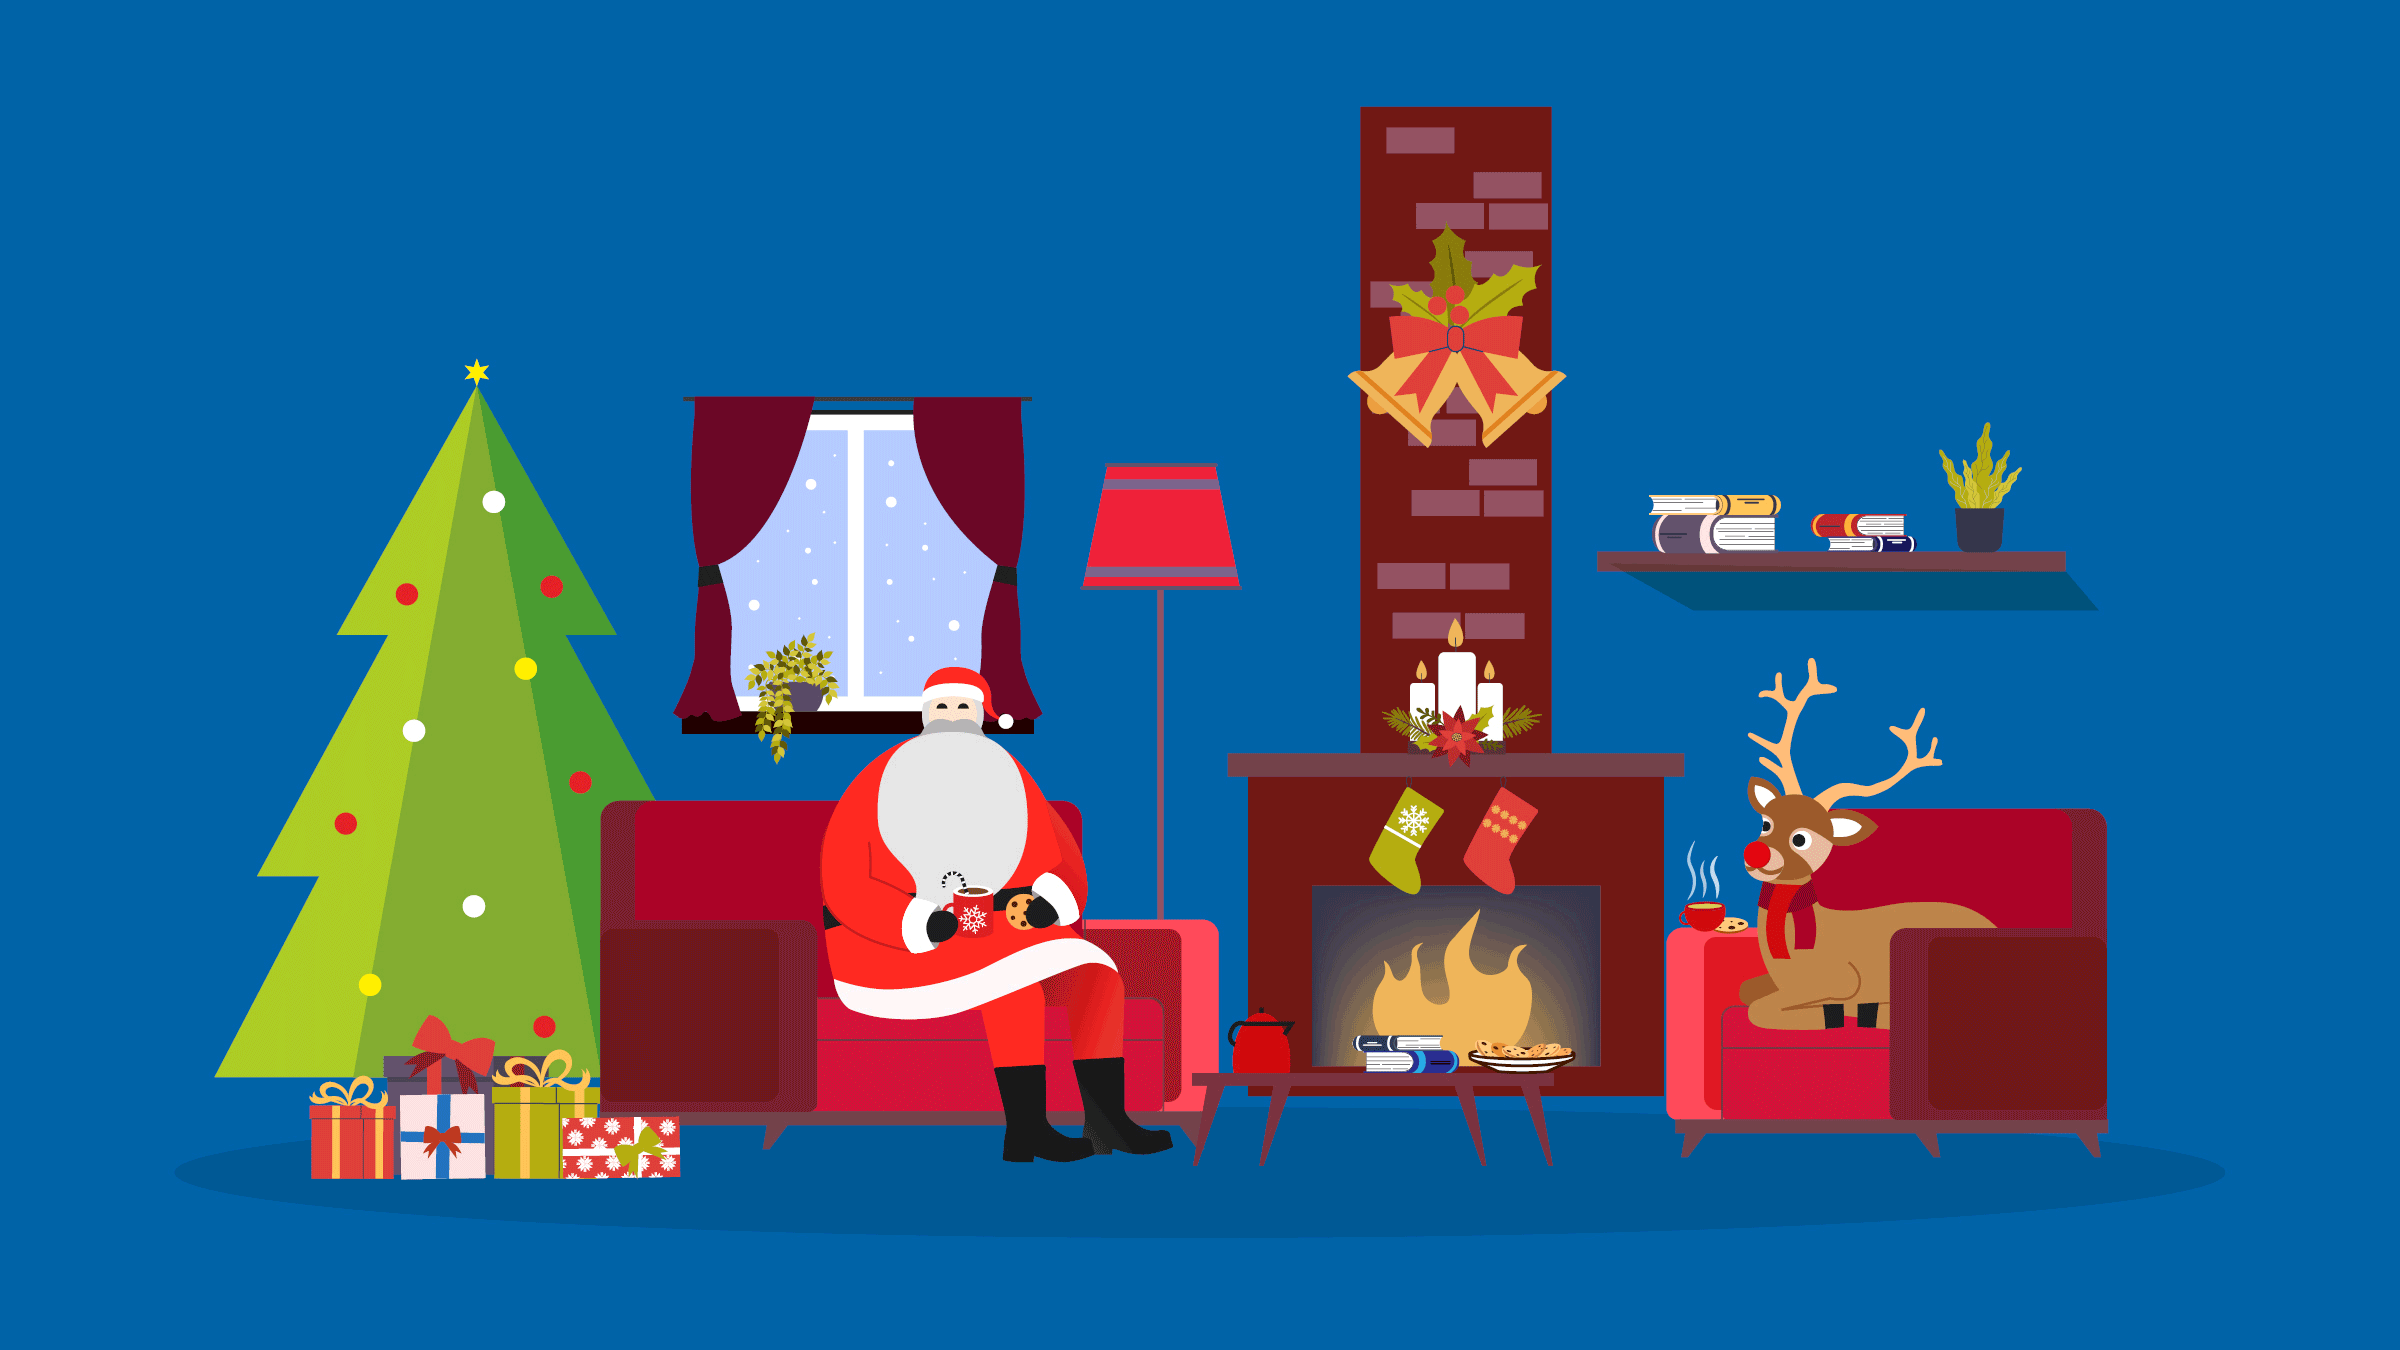 Weihnachts-GIF mit Weihnachtsmann, Rudolf dem Rotnasen-Rentier, Weihnachtsbaum und Geschenken